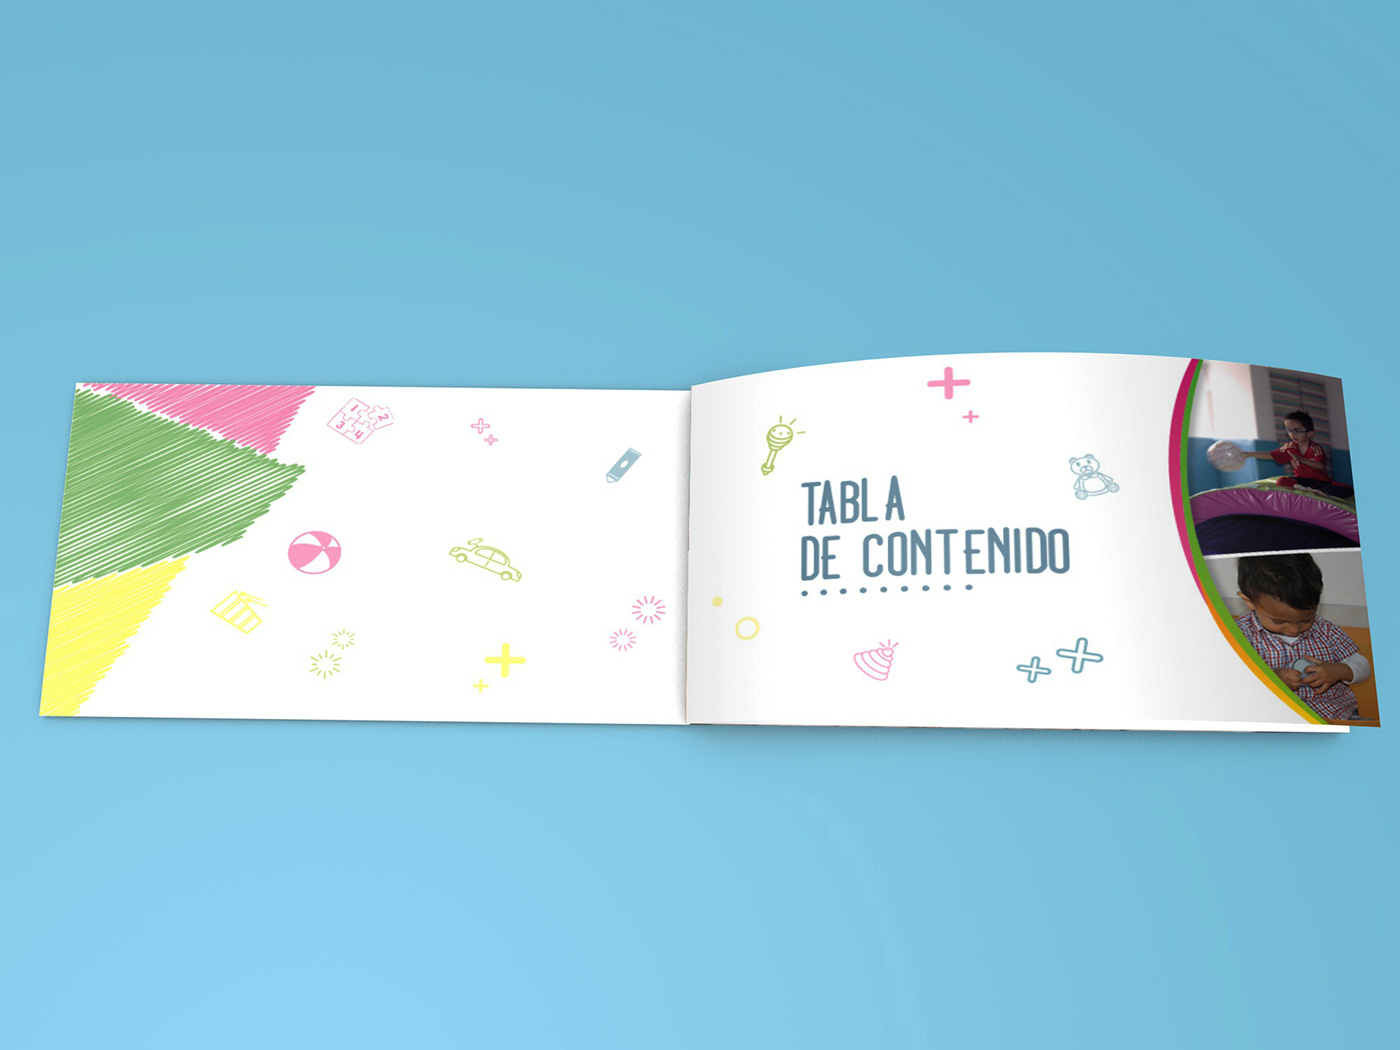 impresos CEENTIR portafolio de servicios tarjetas personales volantes adobe Illustrator photoshop InDesign